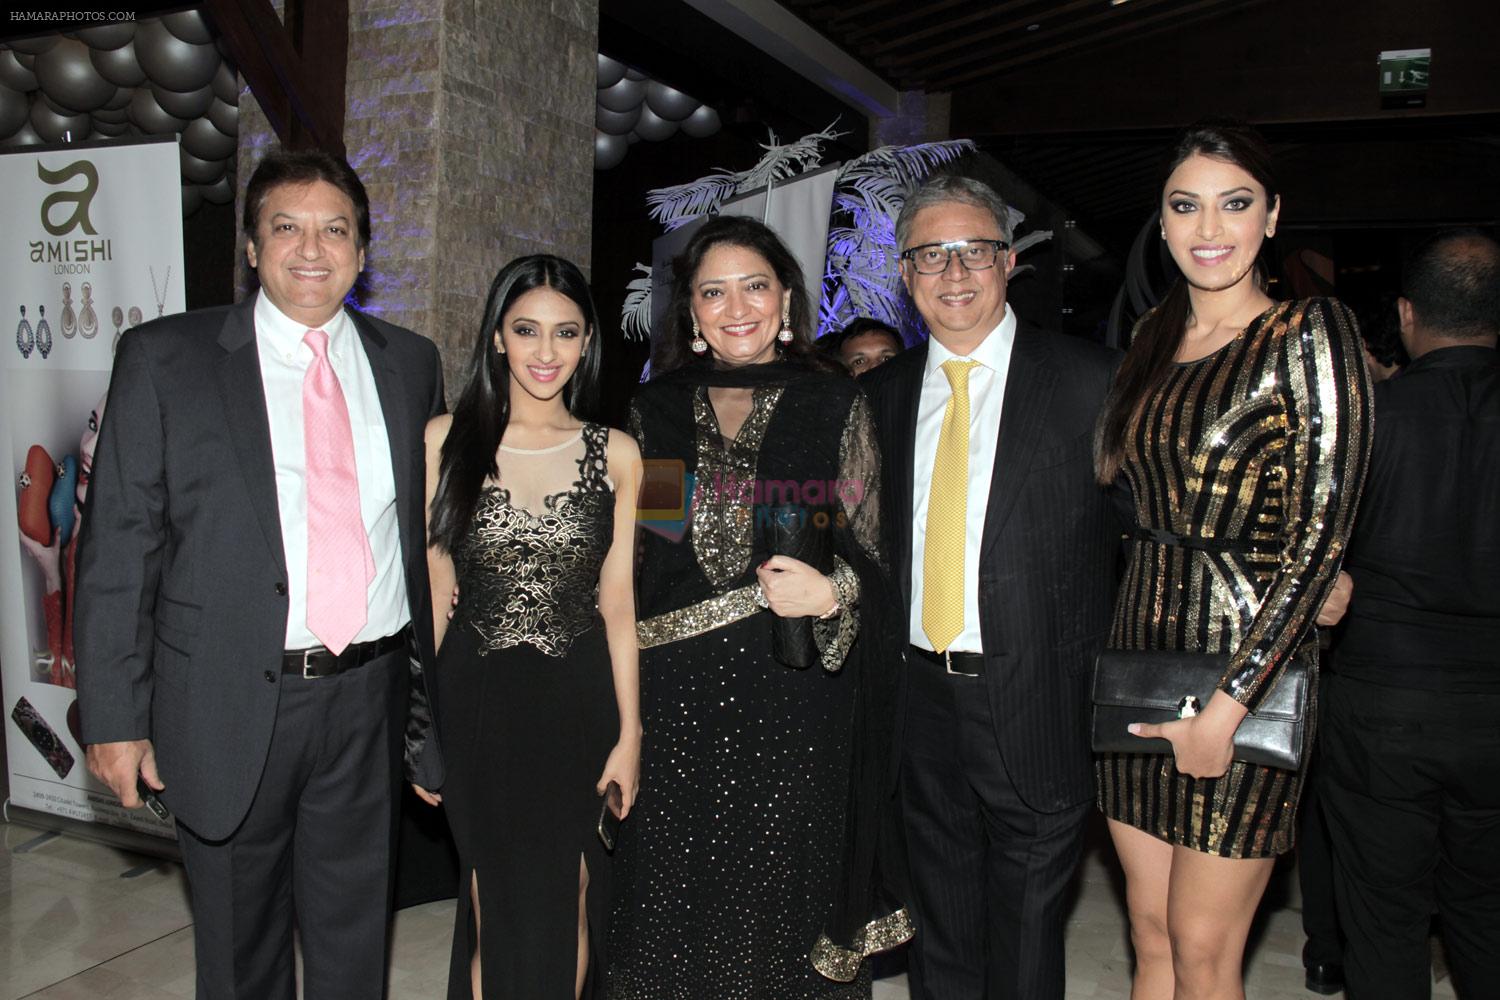 Anushka Ranjan at the Red Carpet of THE GR8! Women Awards-ME 2015, held on the 12th January 2015 at Sofitel, Palms, Dubai